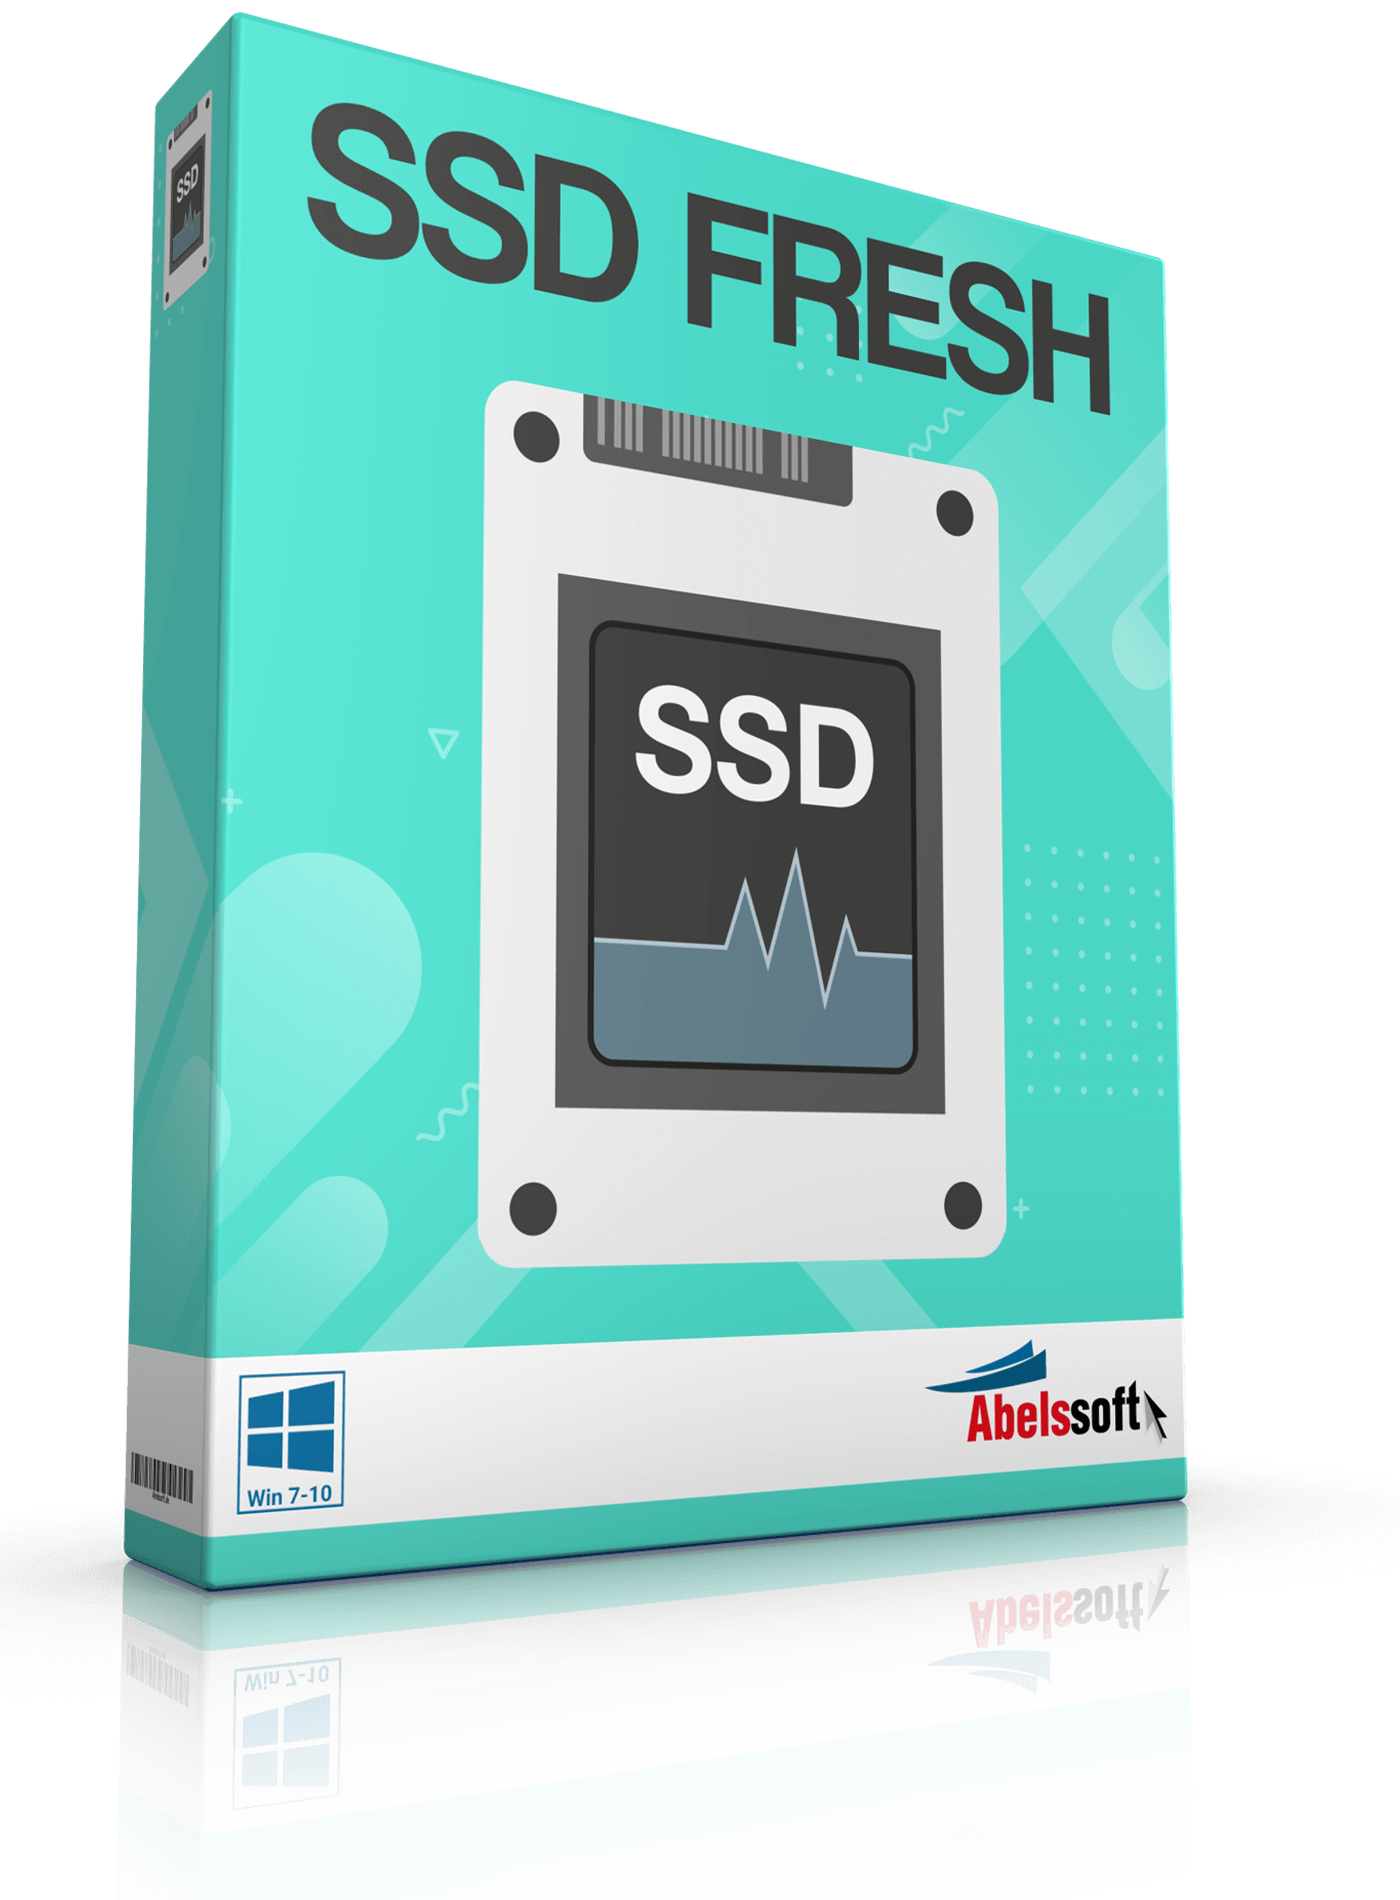 SSD Fresh